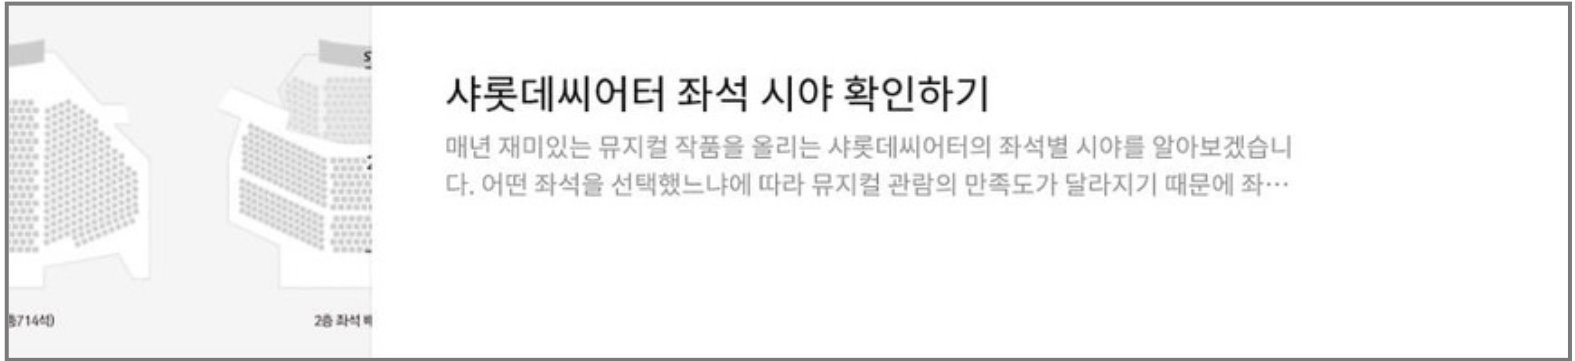 헤드윅 5차 티켓오픈 6월 티켓팅 꿀팁 선예매 공연 일정